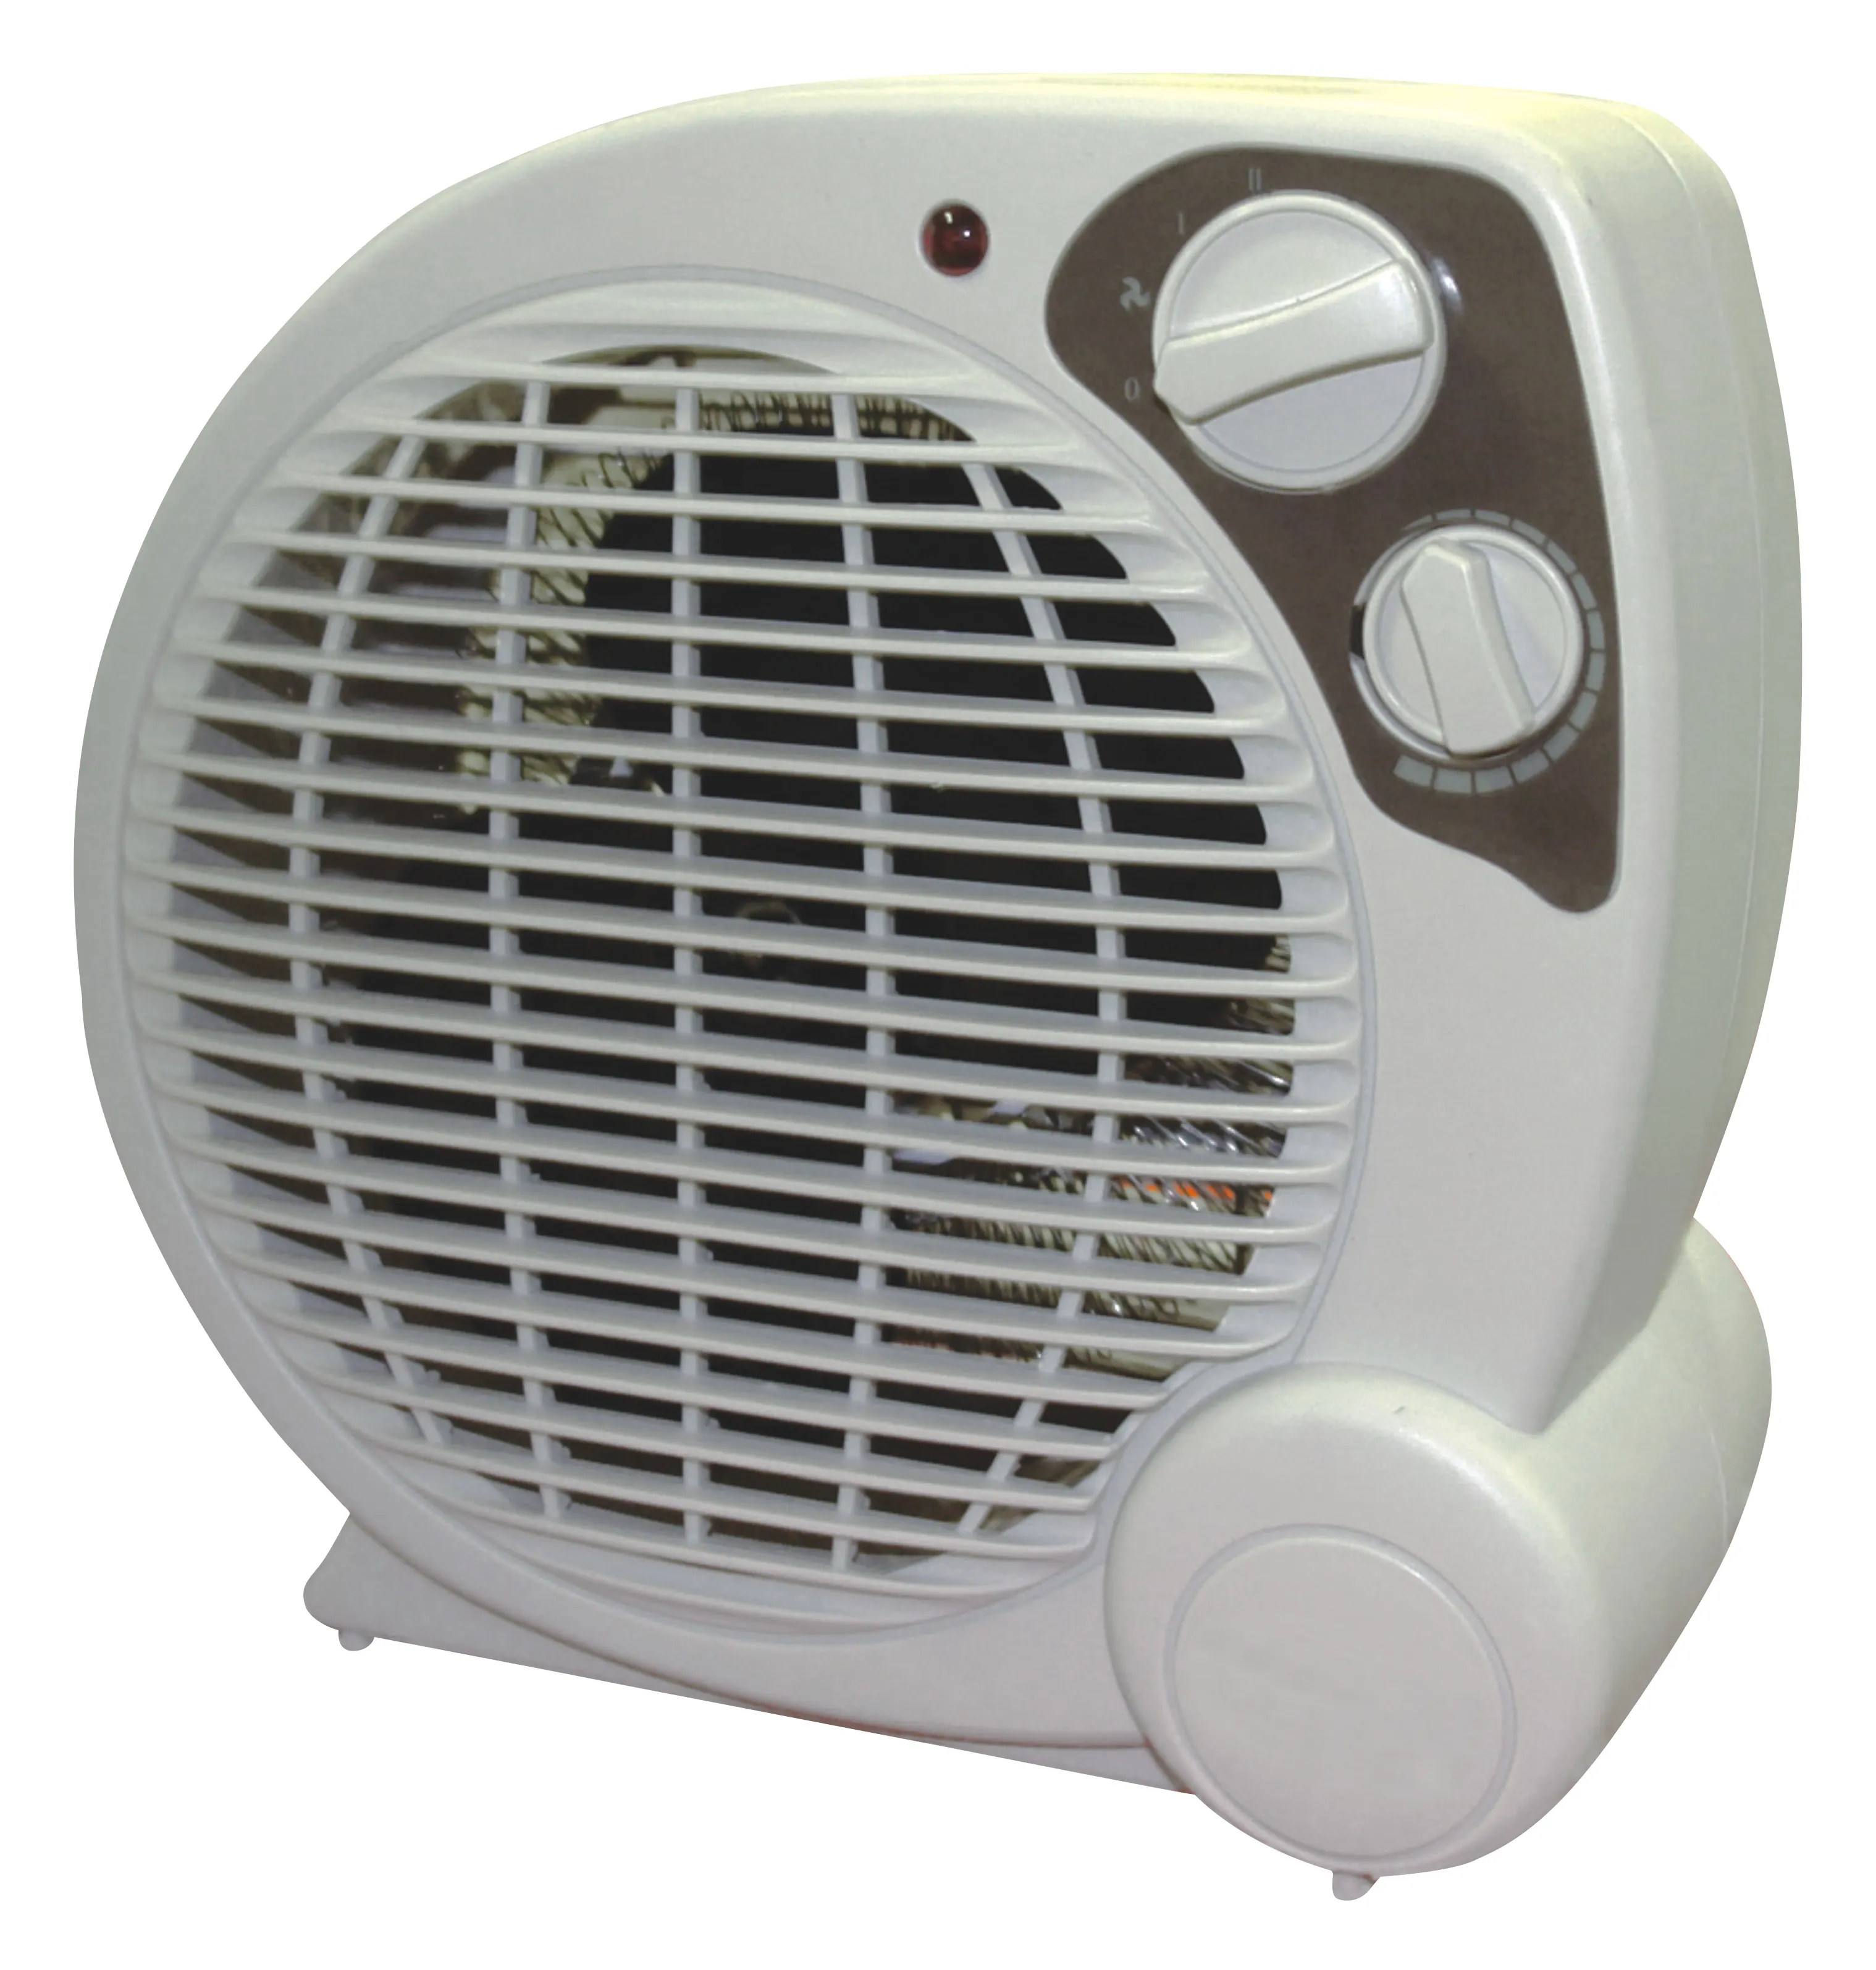 Mini calentador de ventilador portátil de escritorio multifunción con control de termostato ajustable Más vendidos